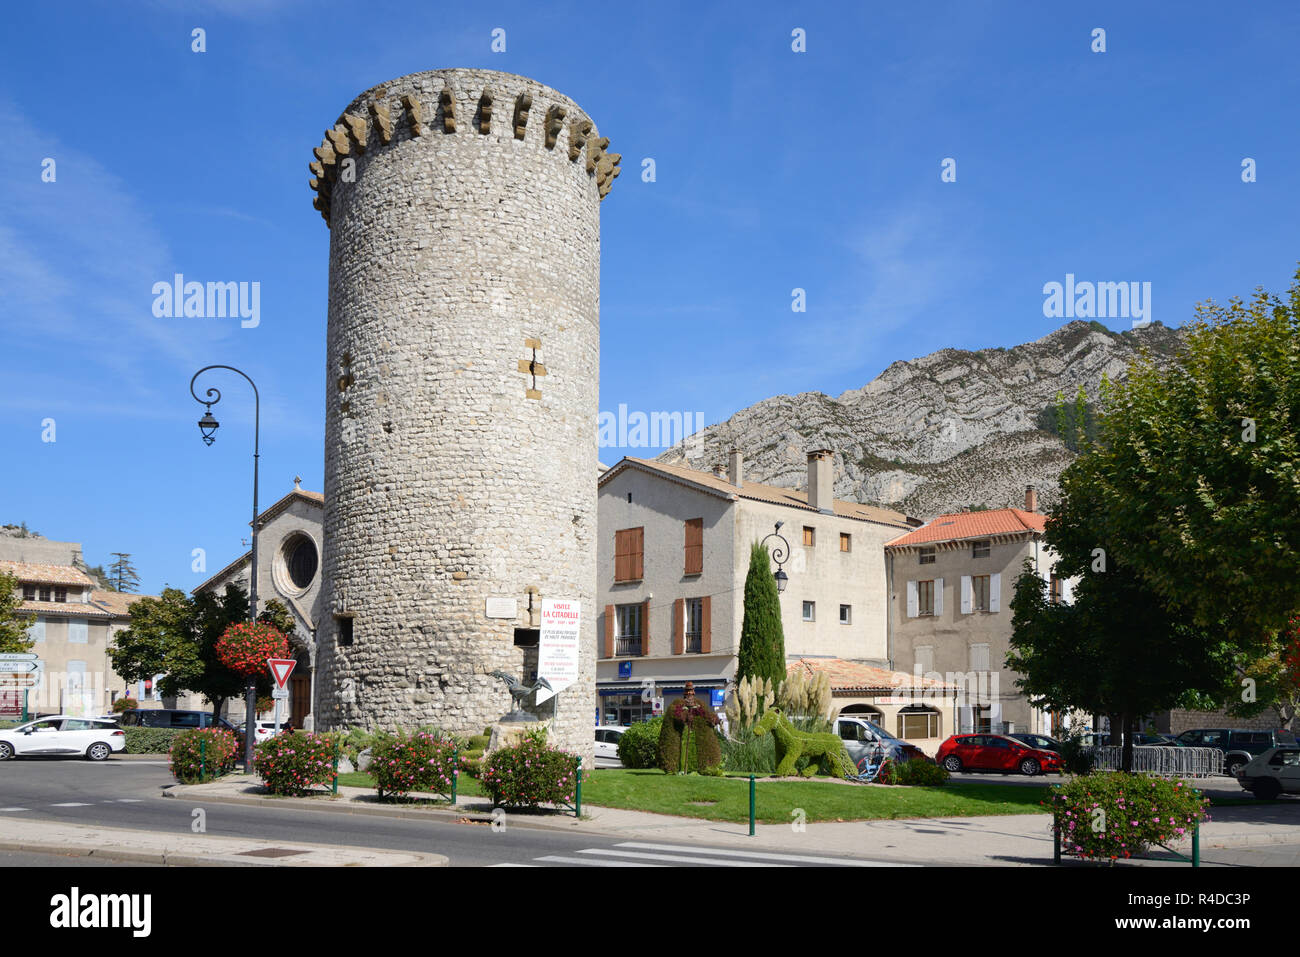 La tour de pierre médiévale, la Tour de la médisance, une partie de la ville médiévale ou ville fortifiée, construite en 1370, Sisteron Provence Banque D'Images